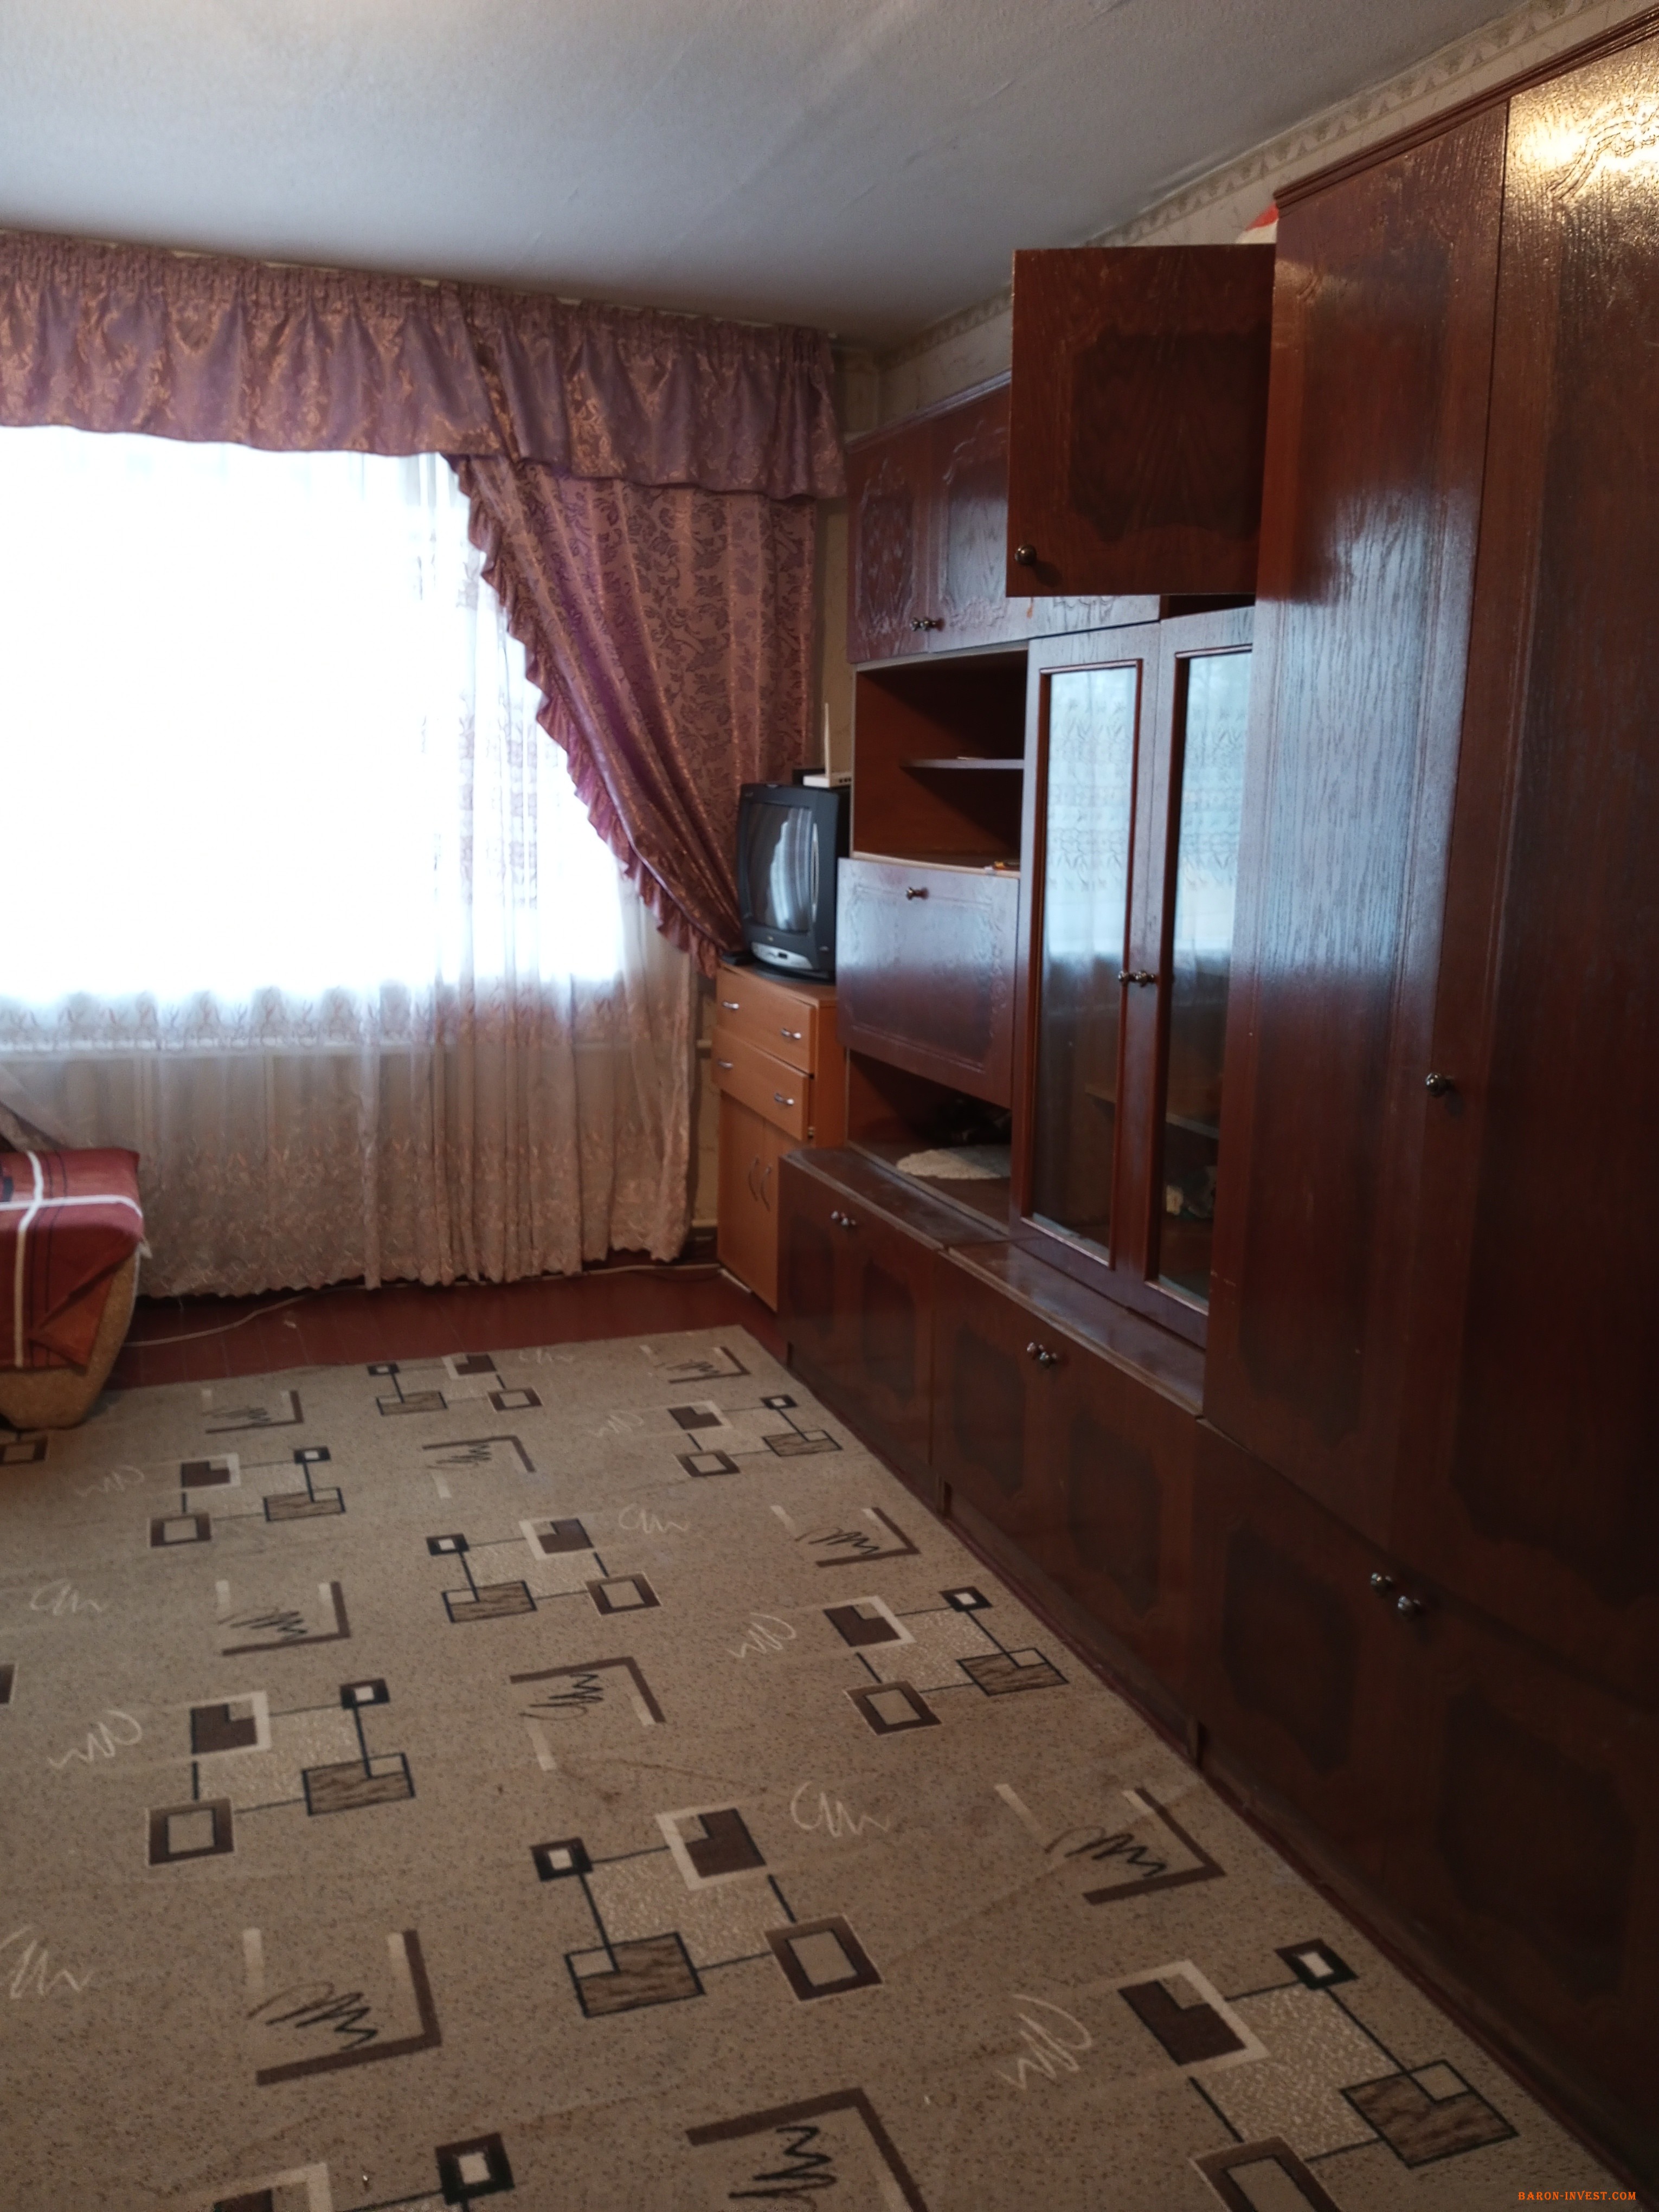 Сдается меблирована комната в семейном общежитие в р-не Дружбы народов в центре Черкассах 